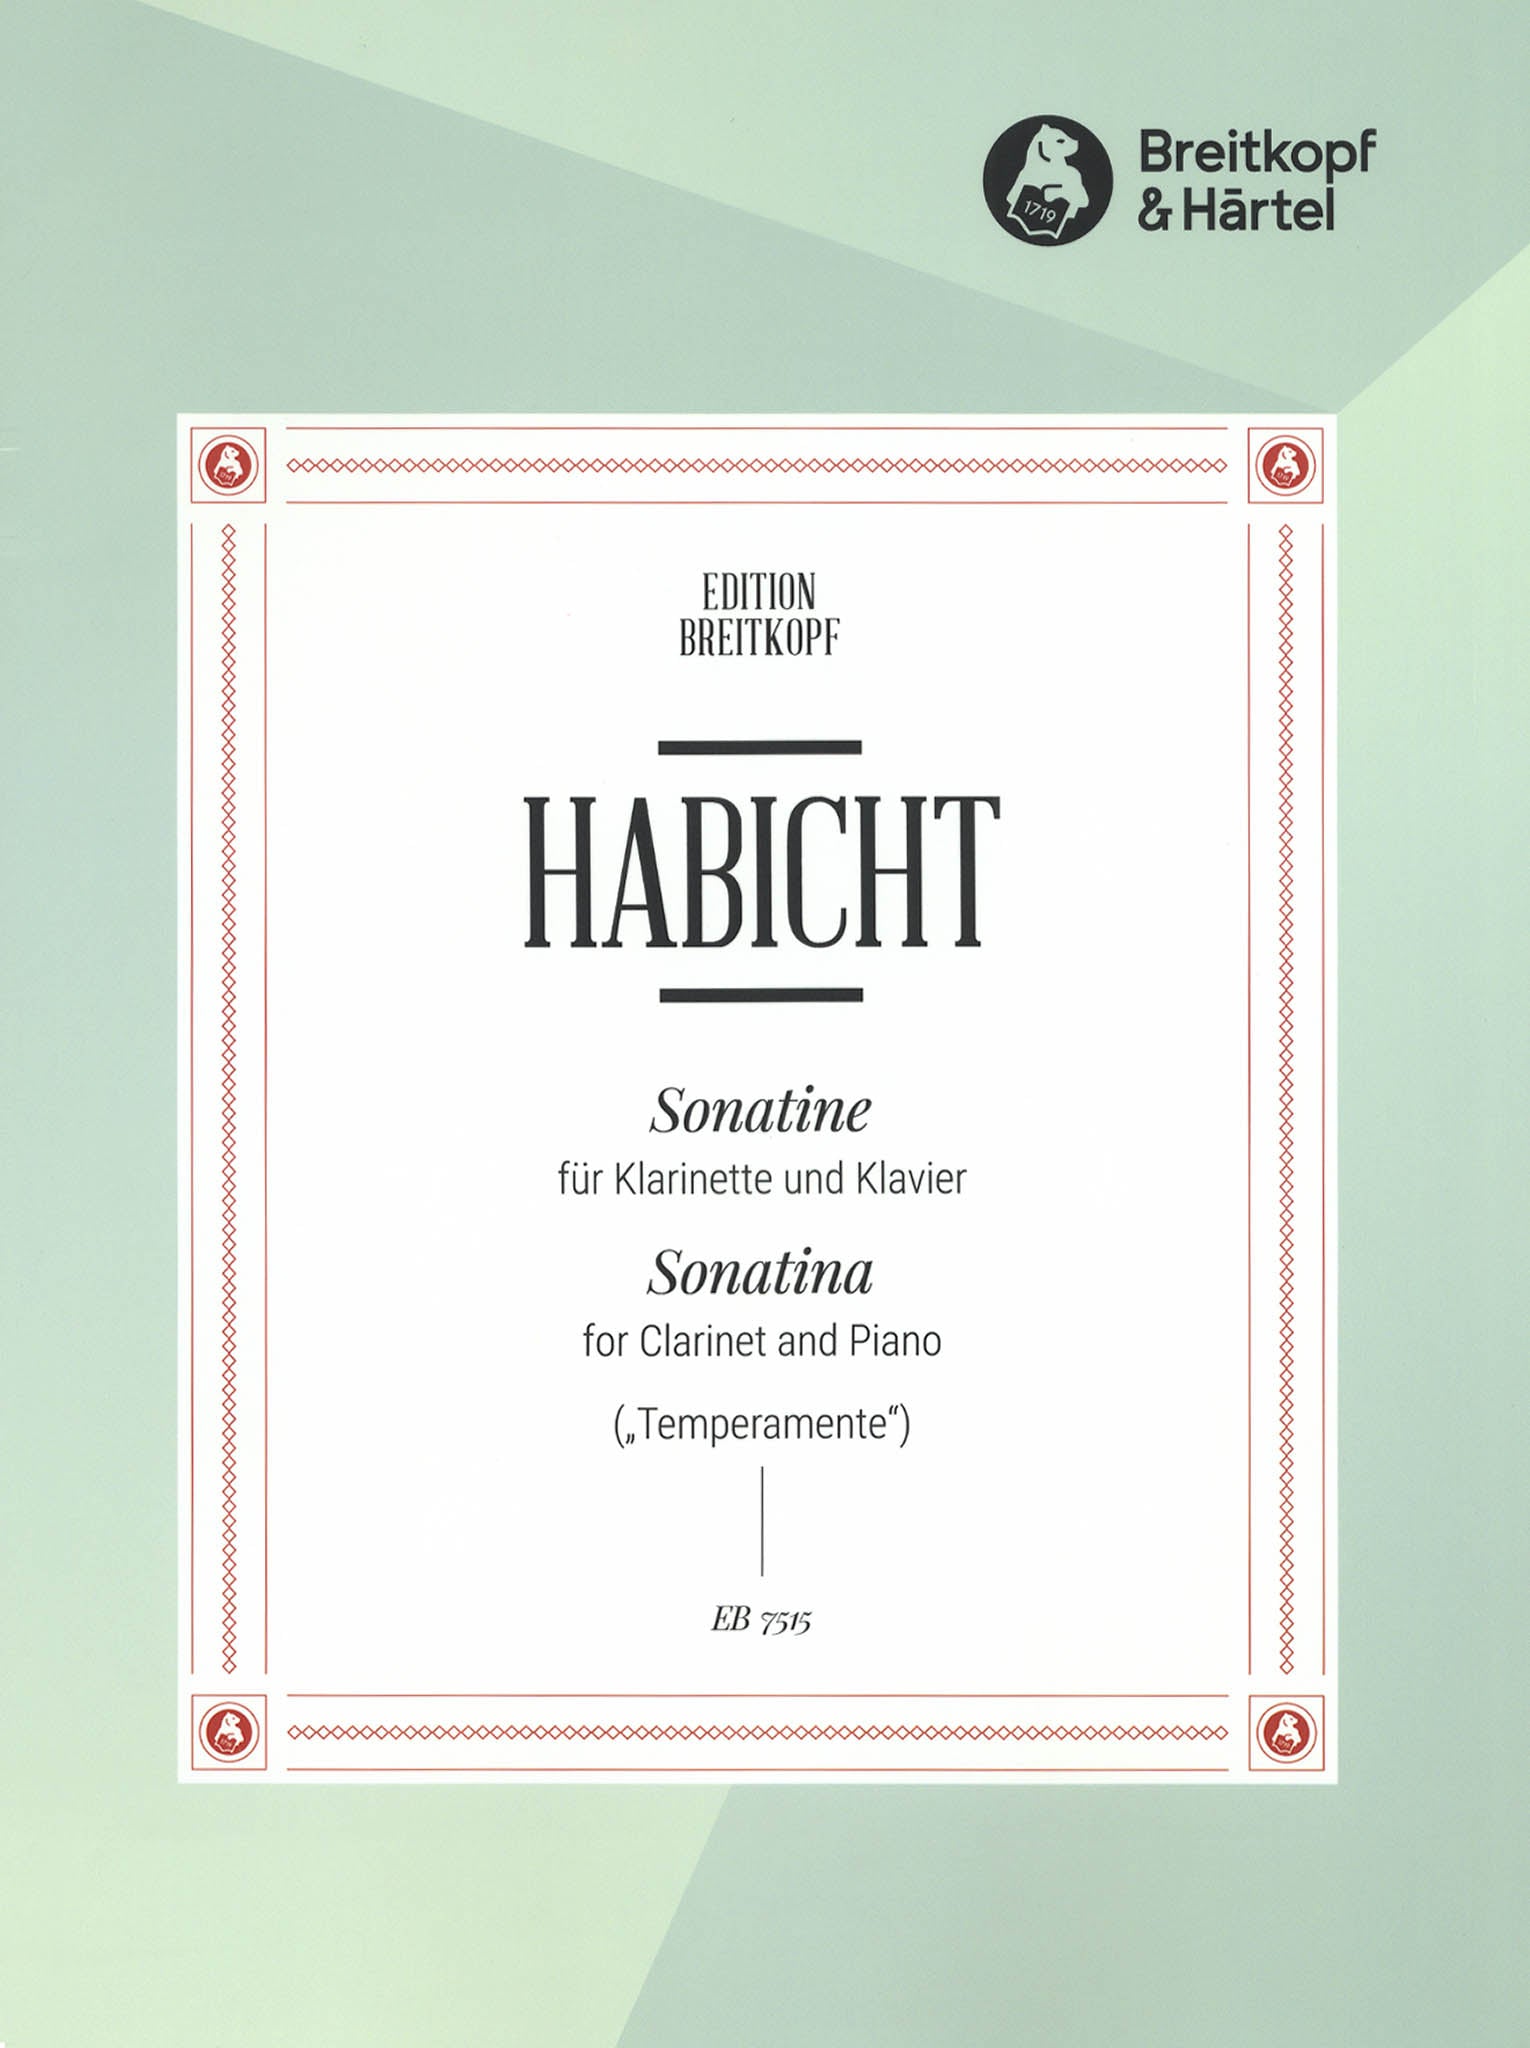 Habicht Clarinet Sonatina Temperamente cover